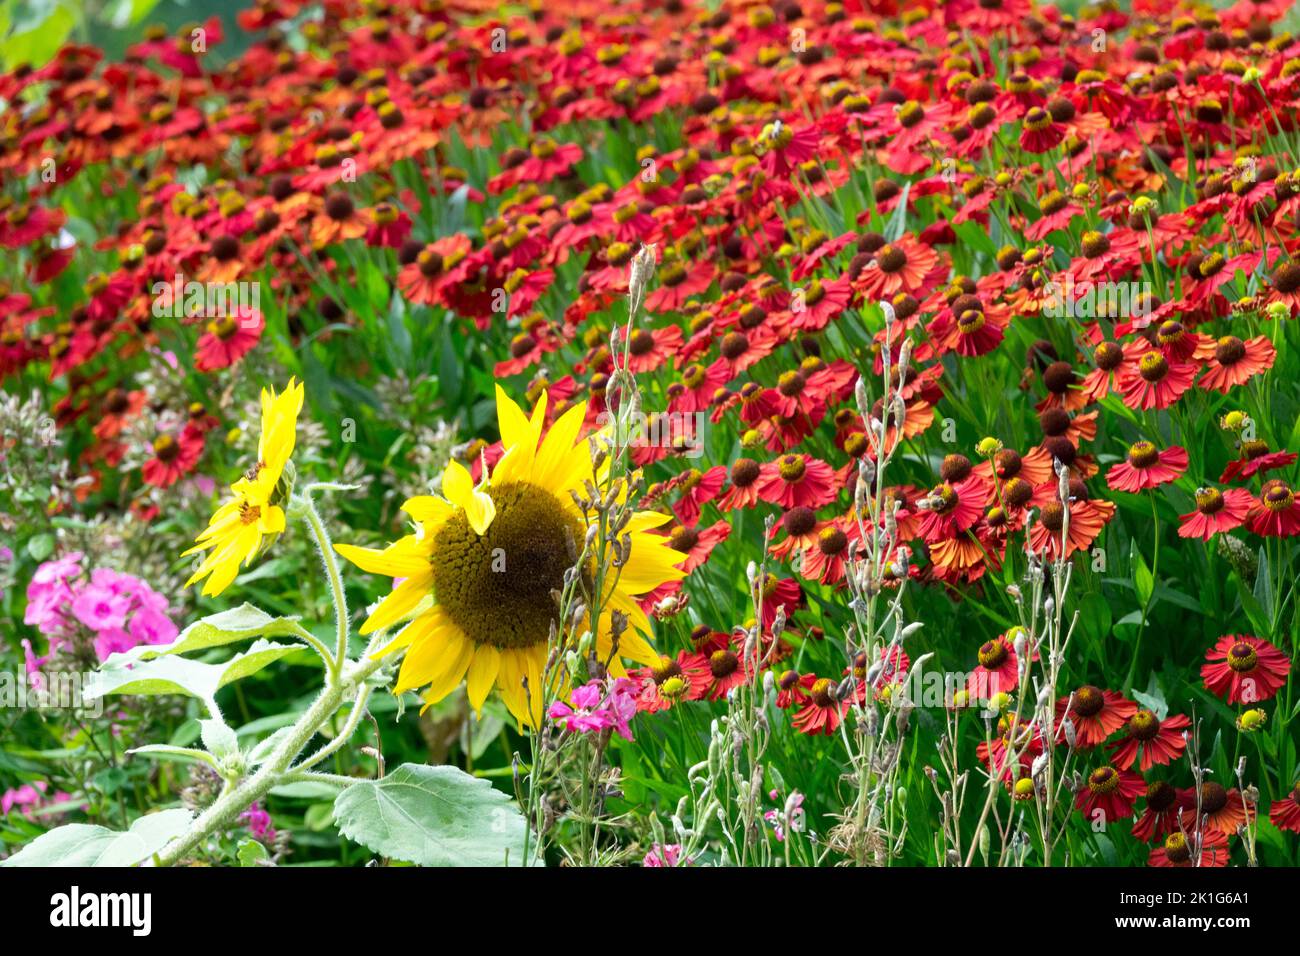 Helenium 'Red Velvet' Gartenblumenblume gelb-rote Farbkombination in einem Gartenblumenbeet in voller Blüte, Sommerpflanzen Stockfoto